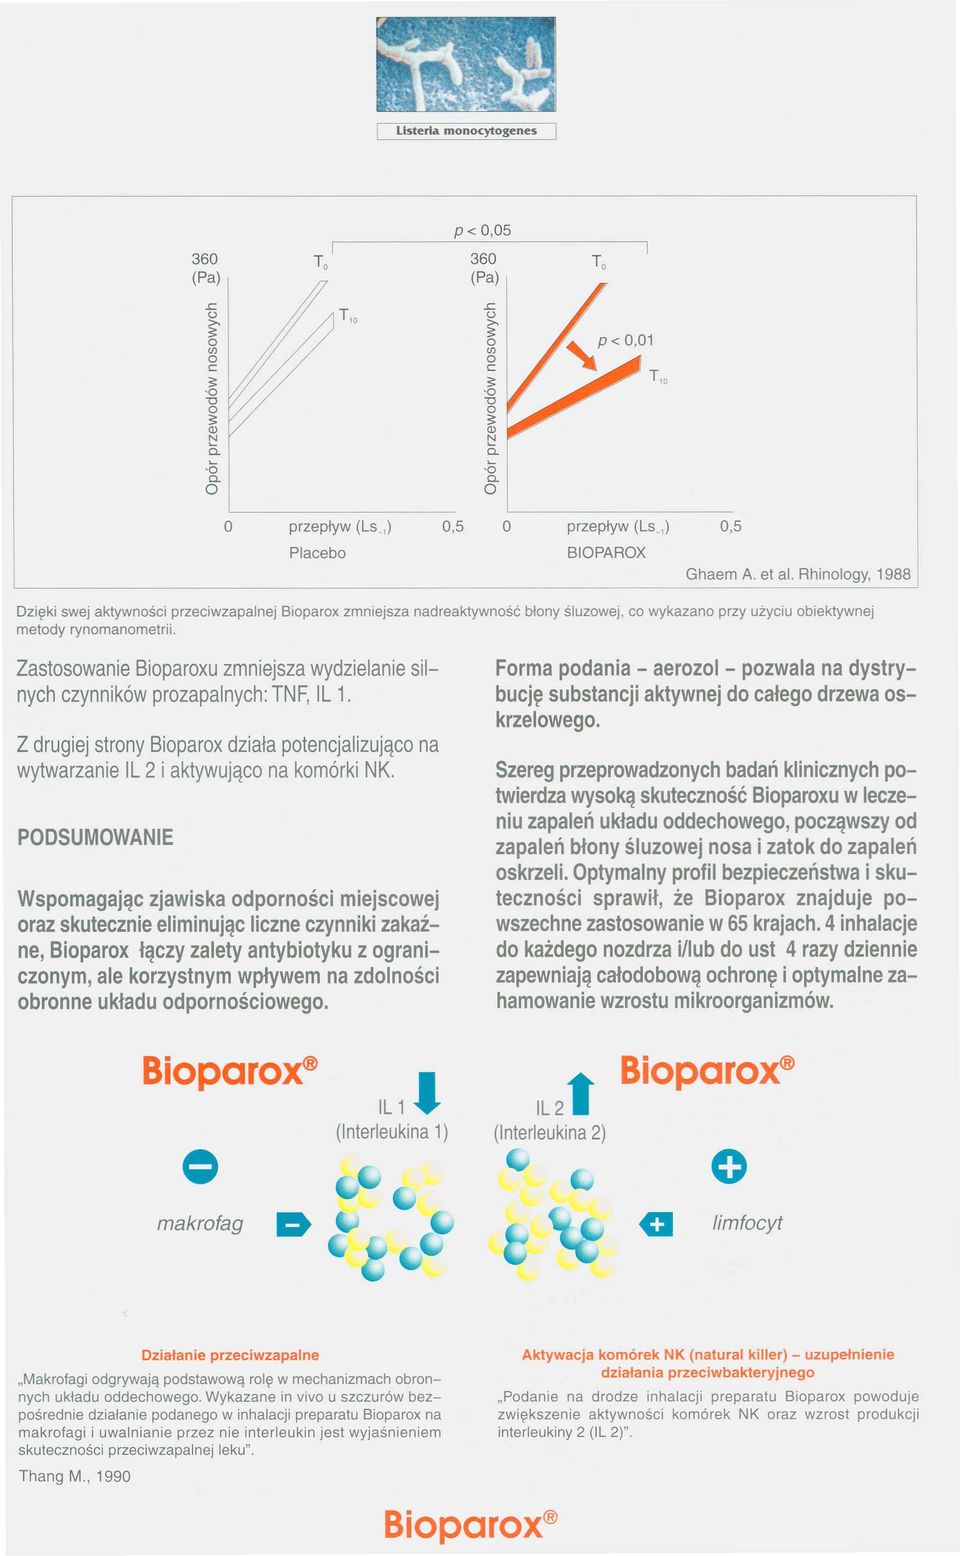 Bioparox zmniejsza nad reaktywność błony śluzowej, co wykazano przy użyciu obiektywnej Zastosowanie Bioparoxu zmniejsza wydzielanie silnych czynników prozapalnych: TNF, IL 1.